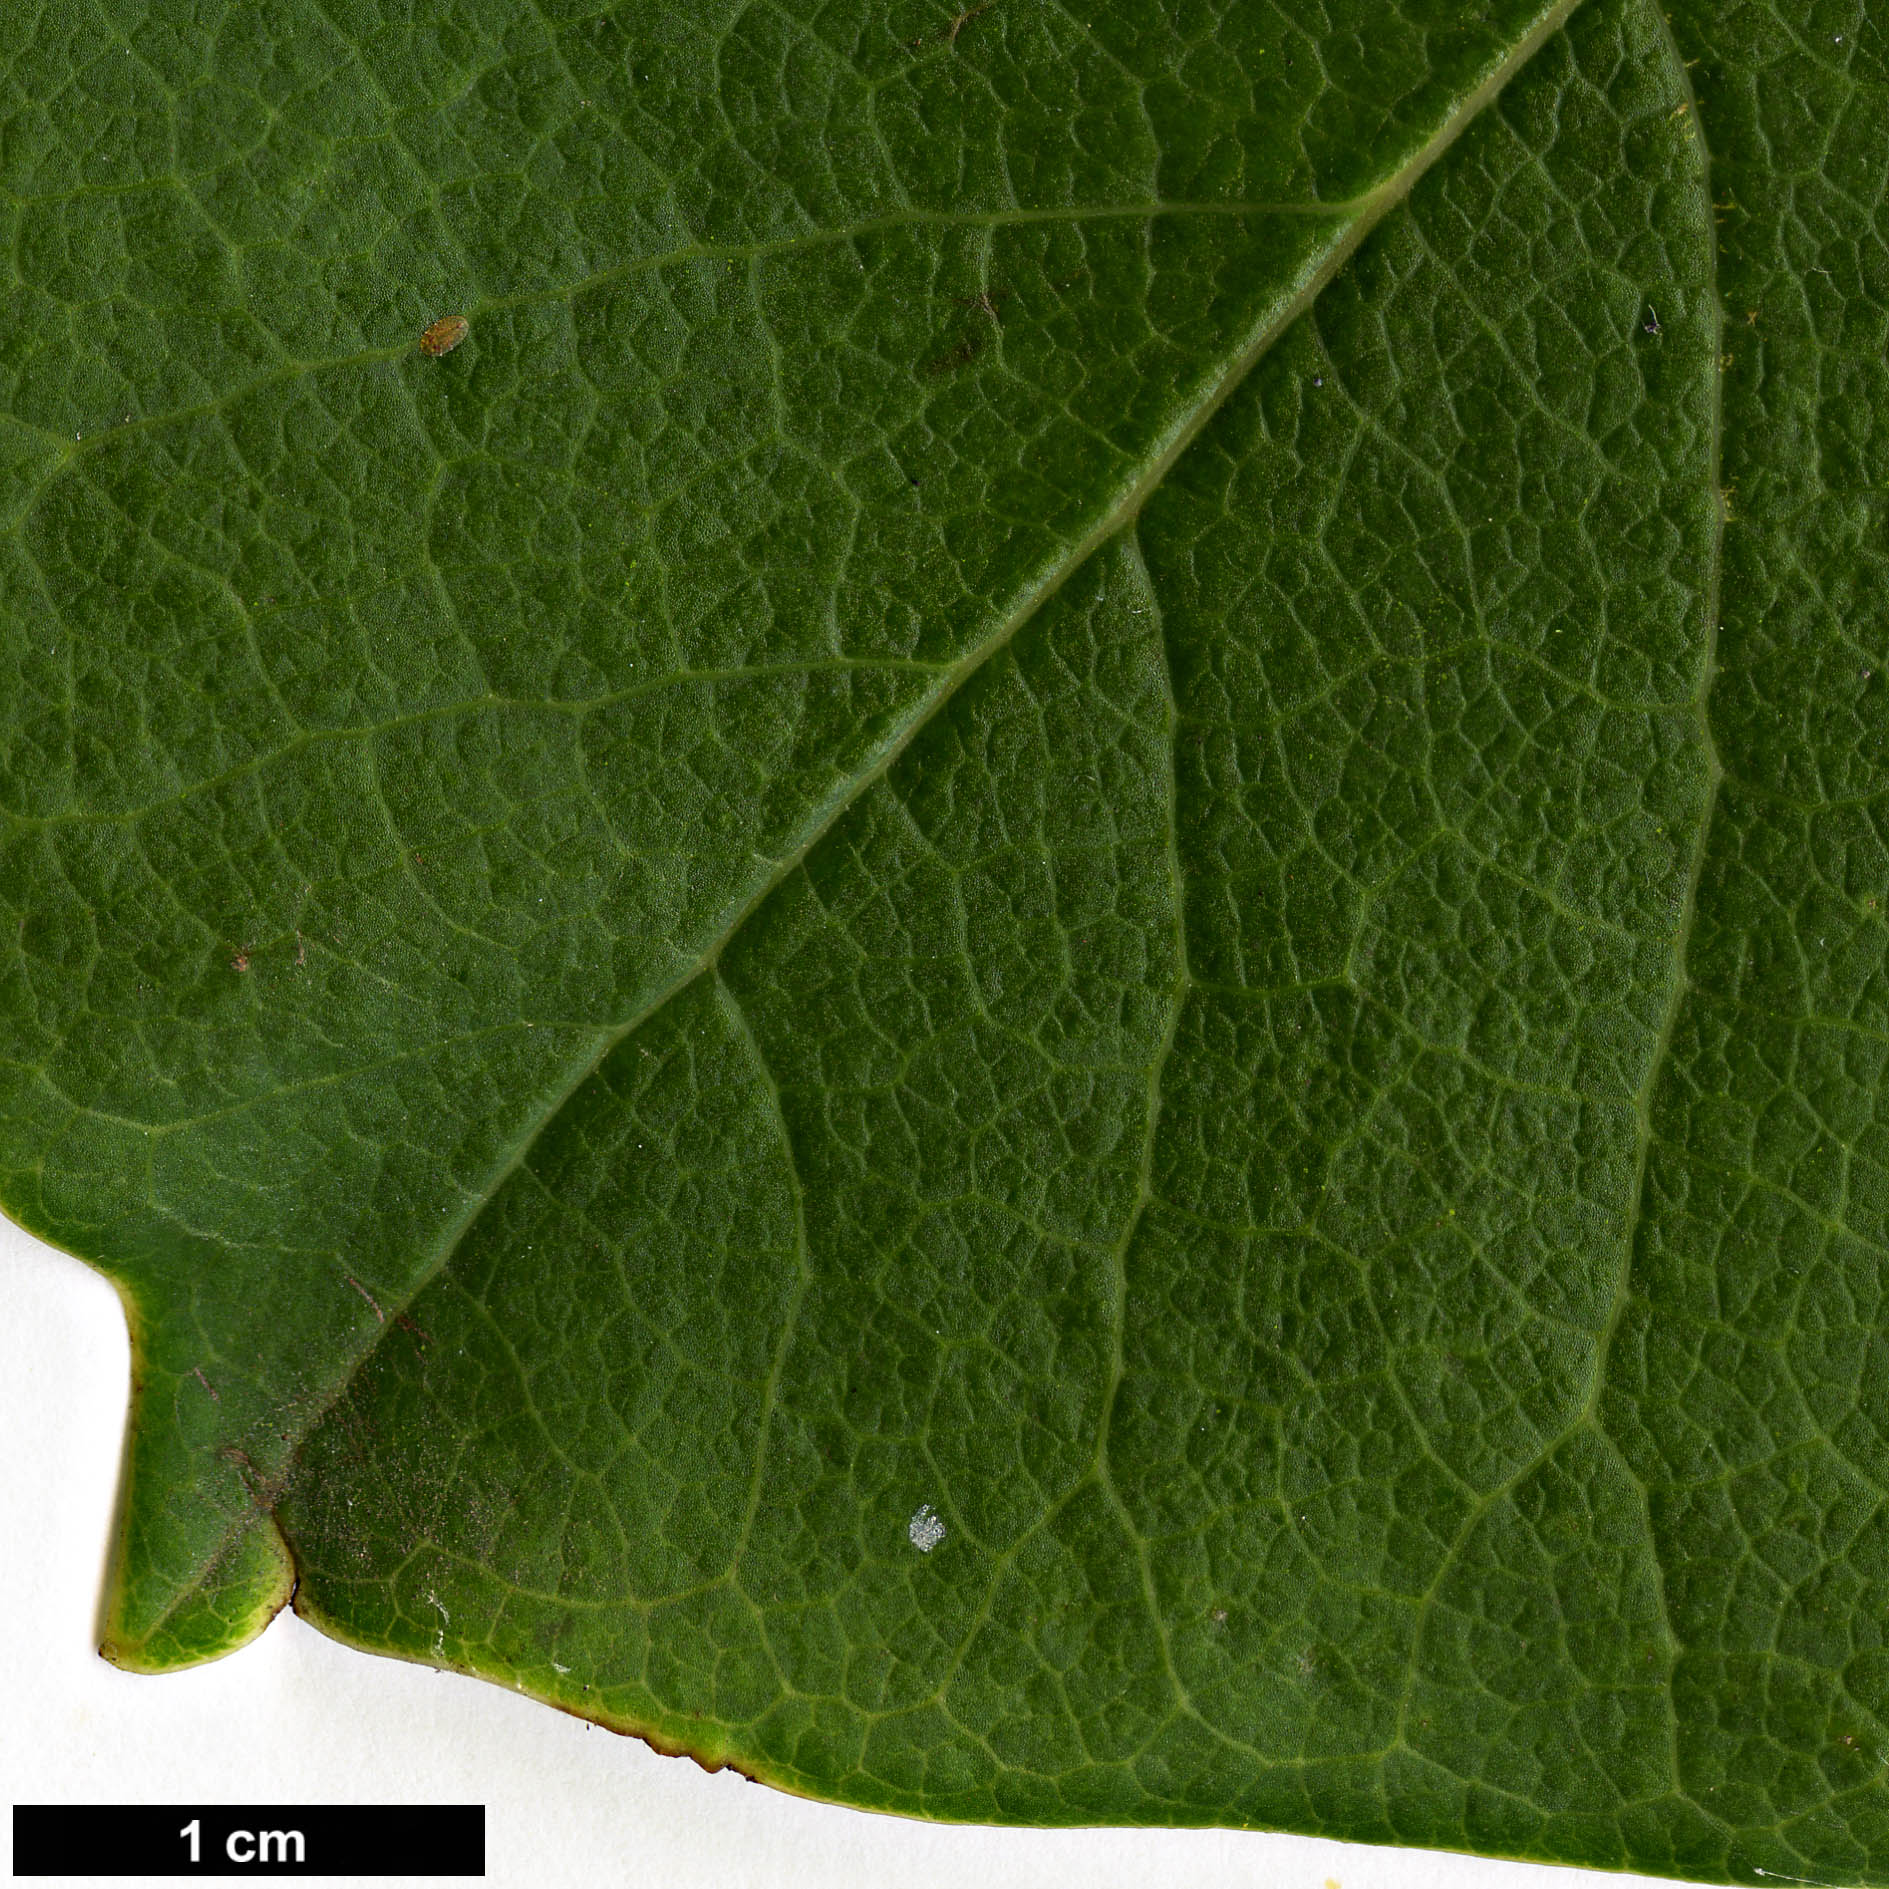 High resolution image: Family: Magnoliaceae - Genus: Magnolia - Taxon: sprengeri - SpeciesSub: var. sprengeri